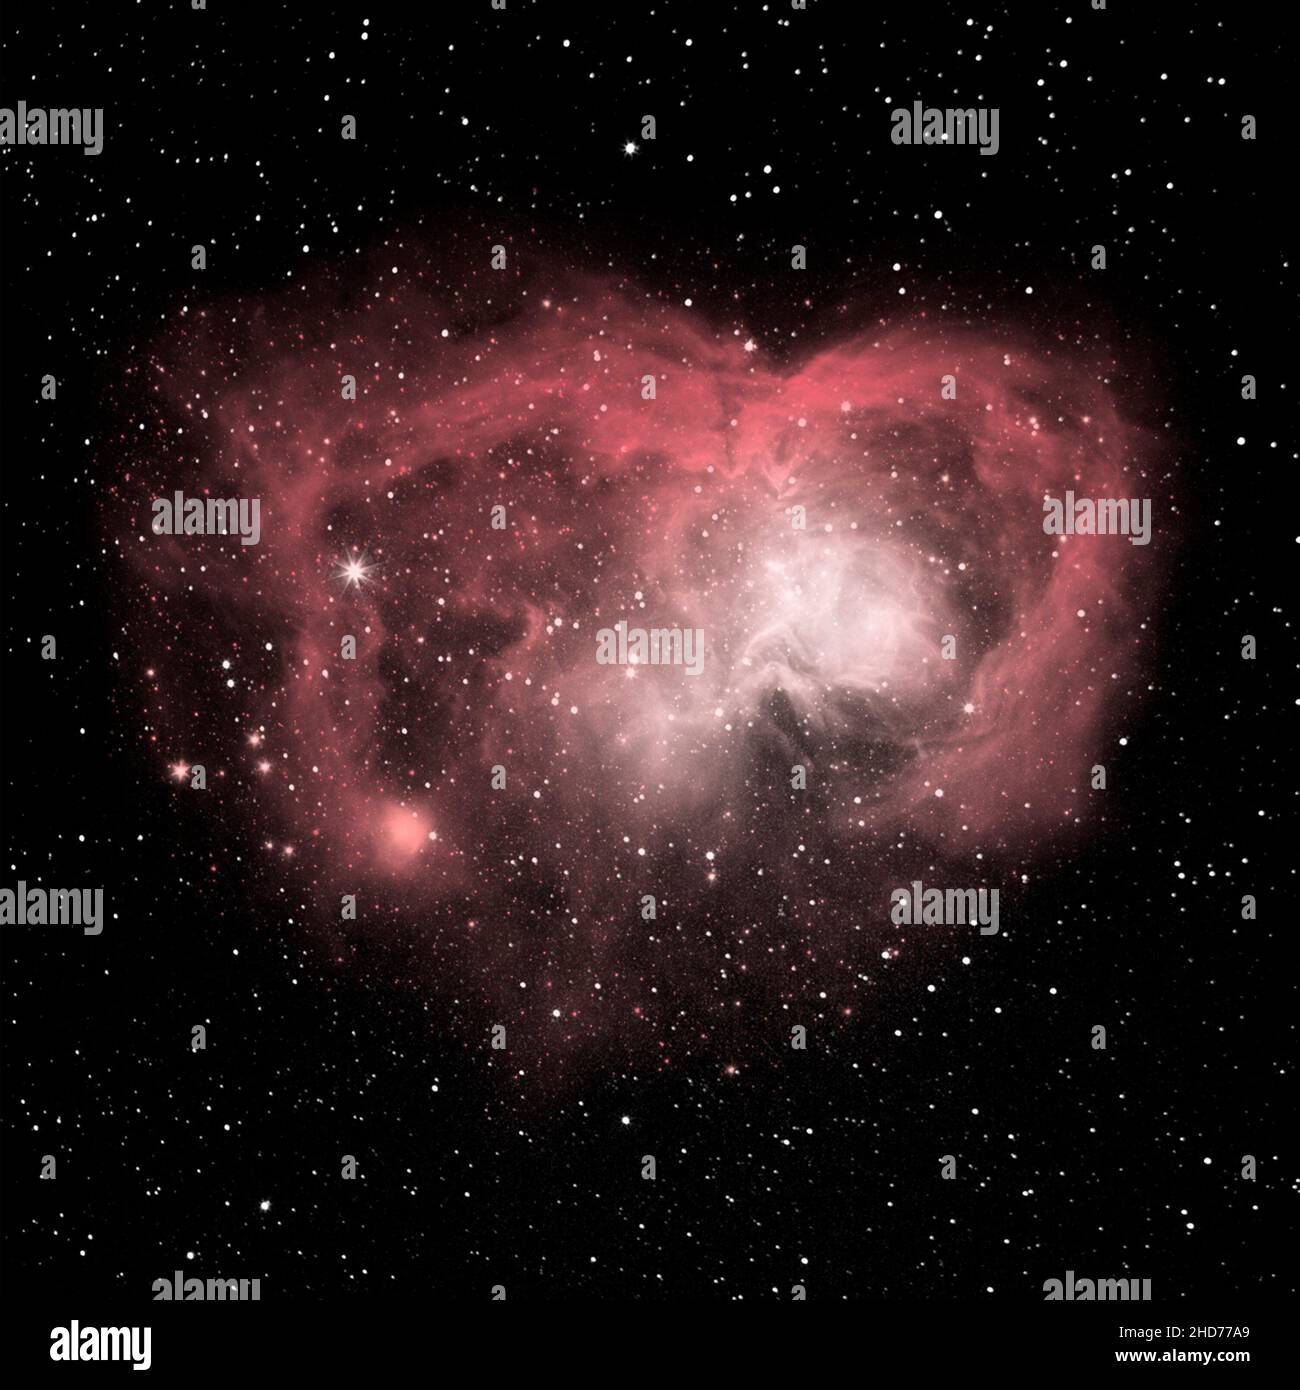 Herz der Sterne des Schmetterlingsnebels, ein bipolarer planetarischer Nebel im Sternbild Scorpius, einer riesigen Ausdehnung von heißem Gas, das von einem sterbenden Stern abgegossen wird Stockfoto